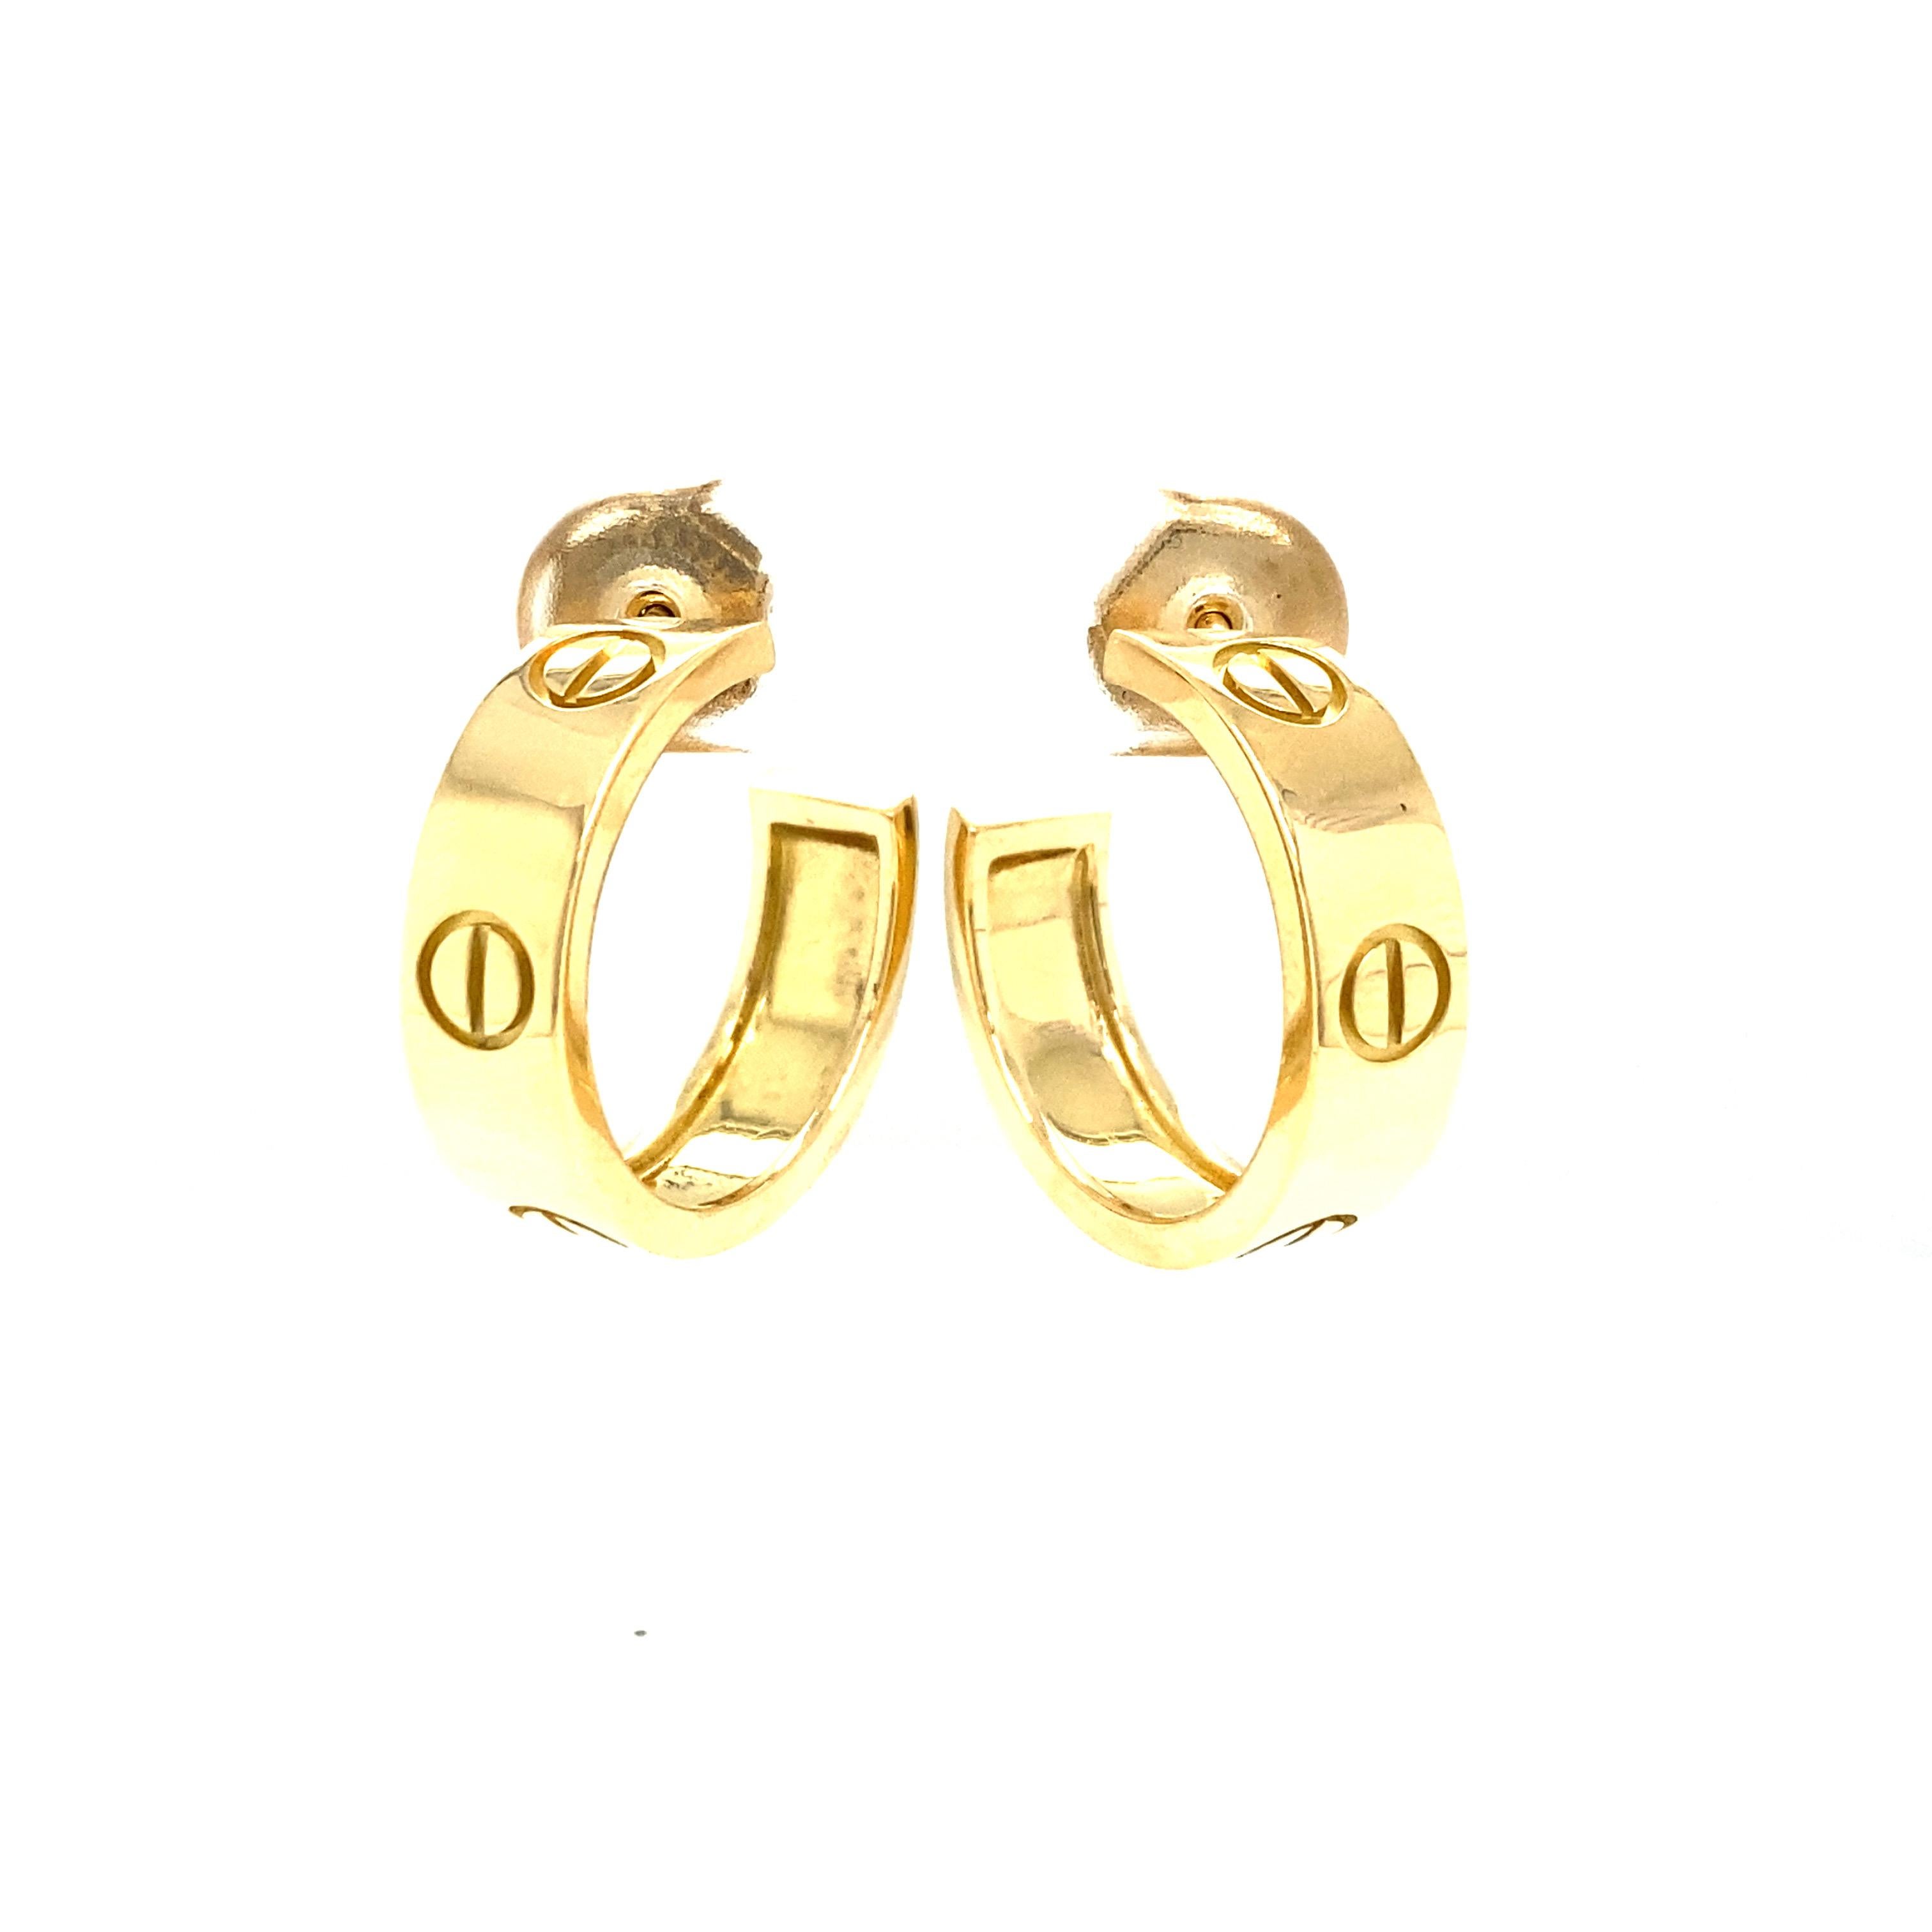 Cartier Love Hoop Earrings in 18K Yellow Gold.  The Earrings measure 3/4 inch in diameter.  9.79 grams.  Signed, Serial Number.